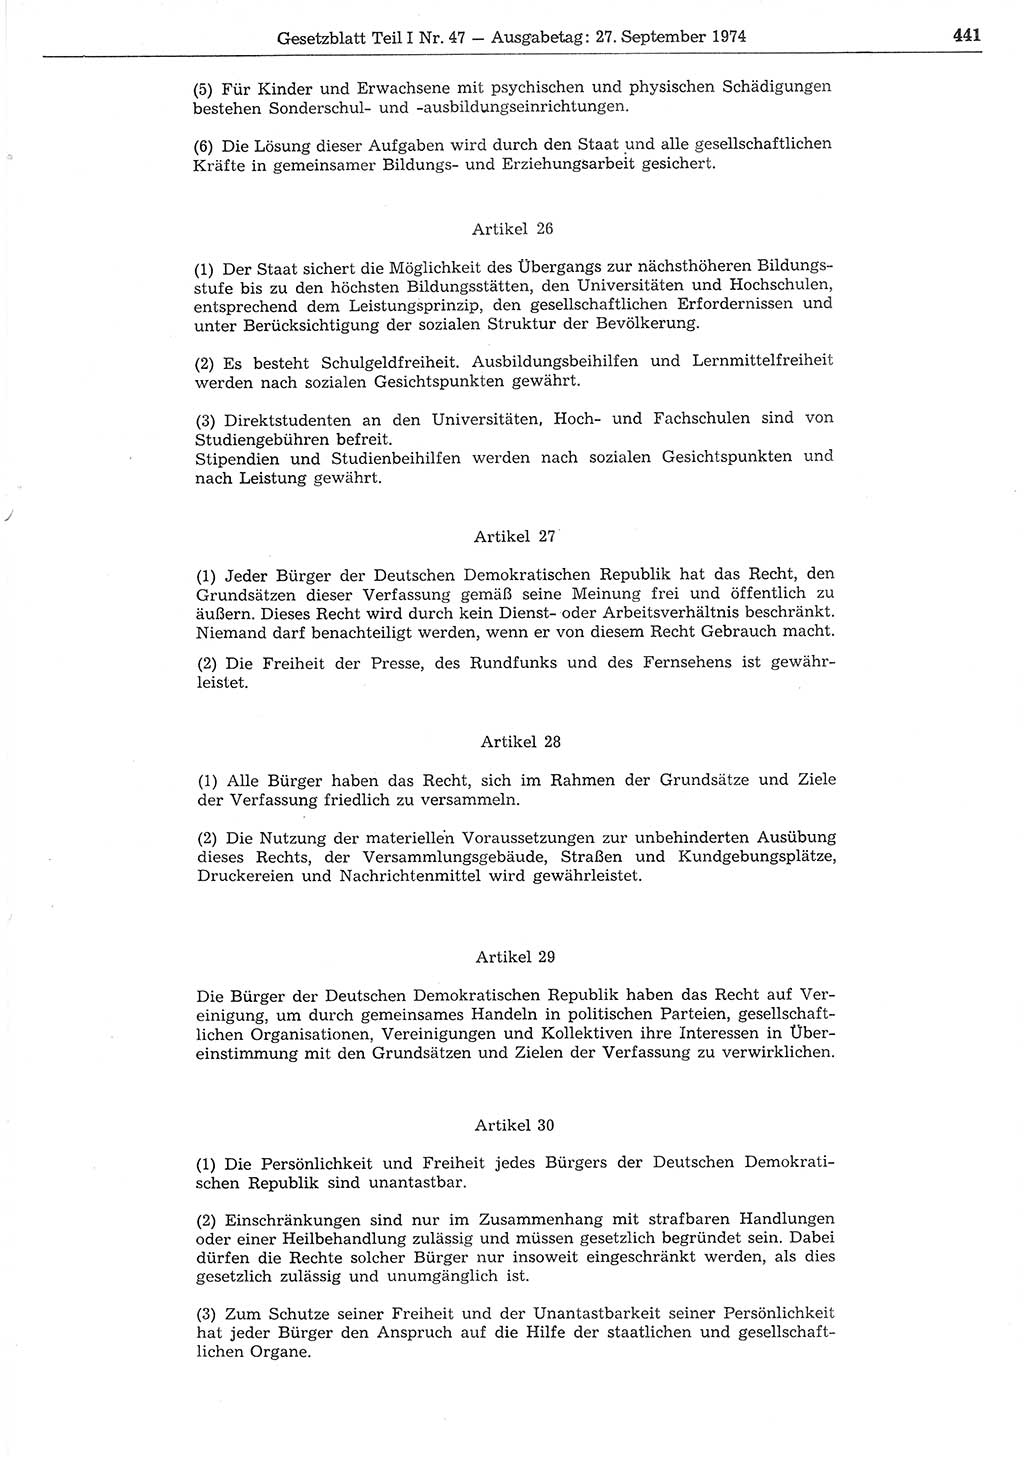 Gesetzblatt (GBl.) der Deutschen Demokratischen Republik (DDR) Teil Ⅰ 1974, Seite 441 (GBl. DDR Ⅰ 1974, S. 441)